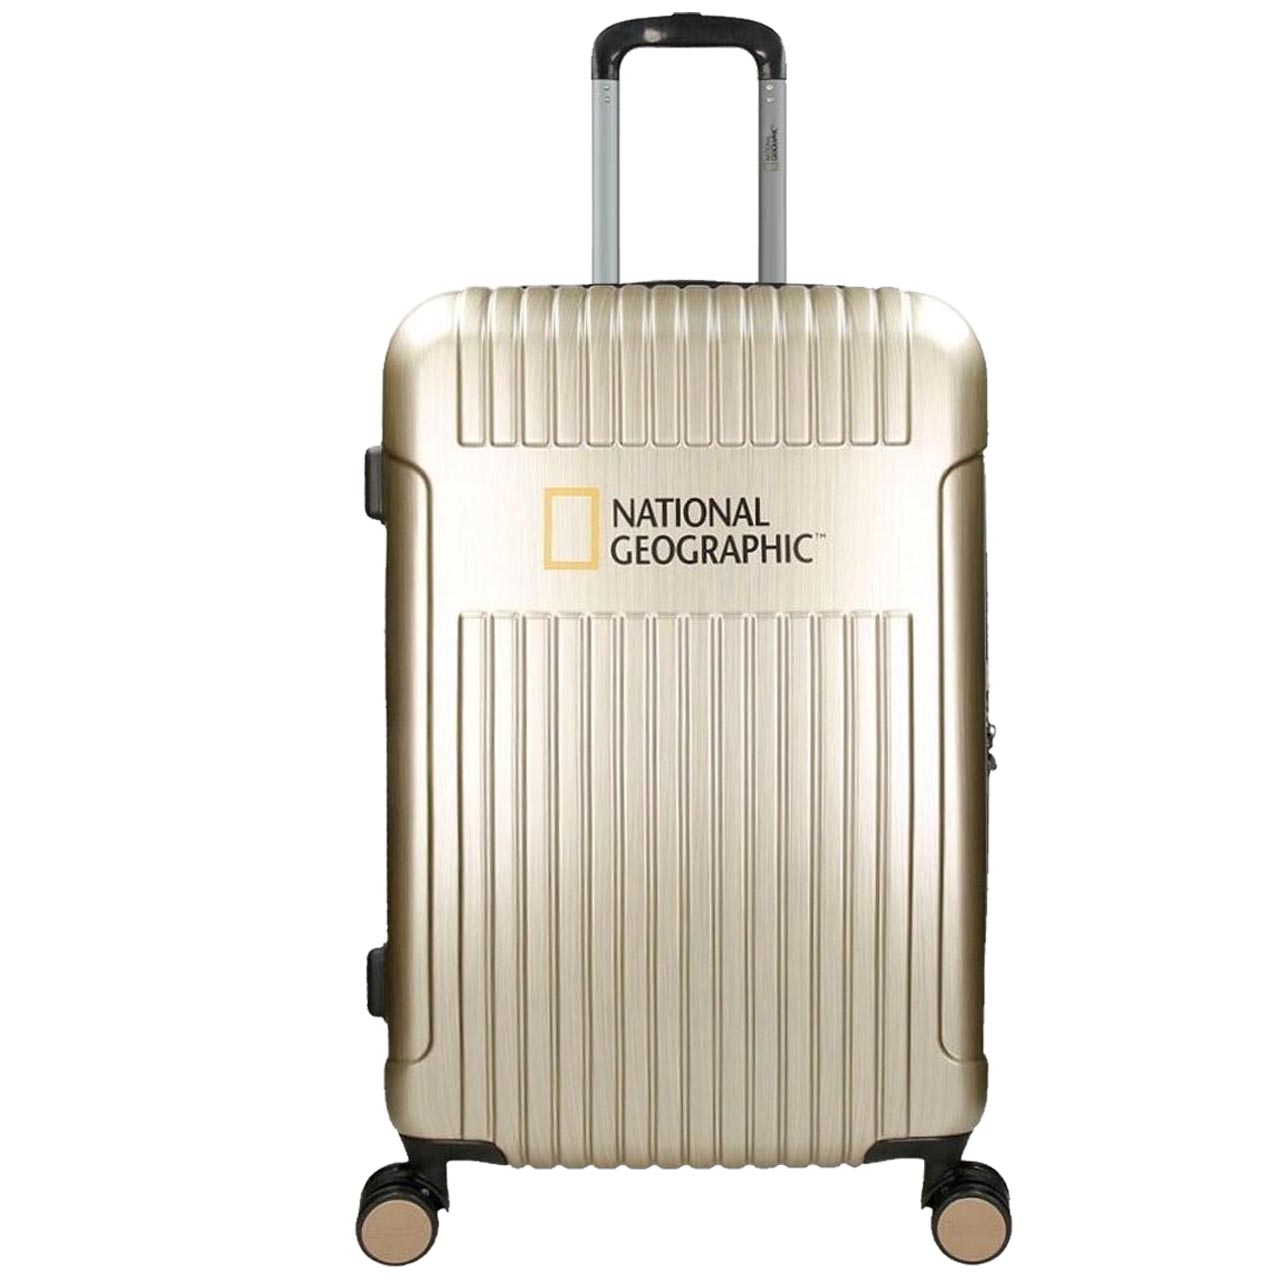 نکته خرید - قیمت روز چمدان نشنال جئوگرافیک مدل TRANSIT کد 700504 سایز متوسط خرید